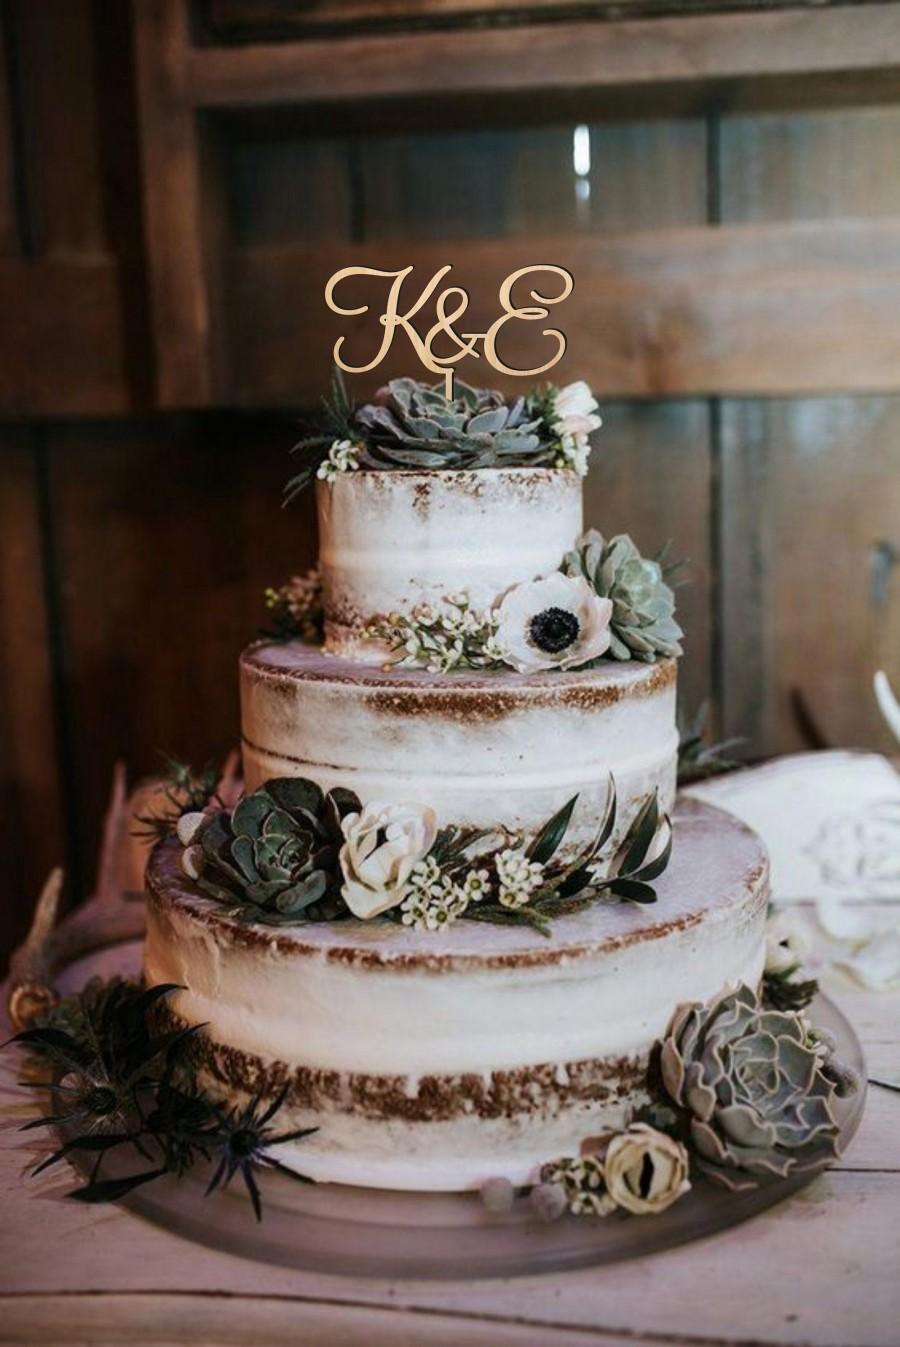 زفاف - Cake topper wedding, letters cake topper, cake topper for wedding, wooden cake topper, gold or silver cake topper, rustic cake topper